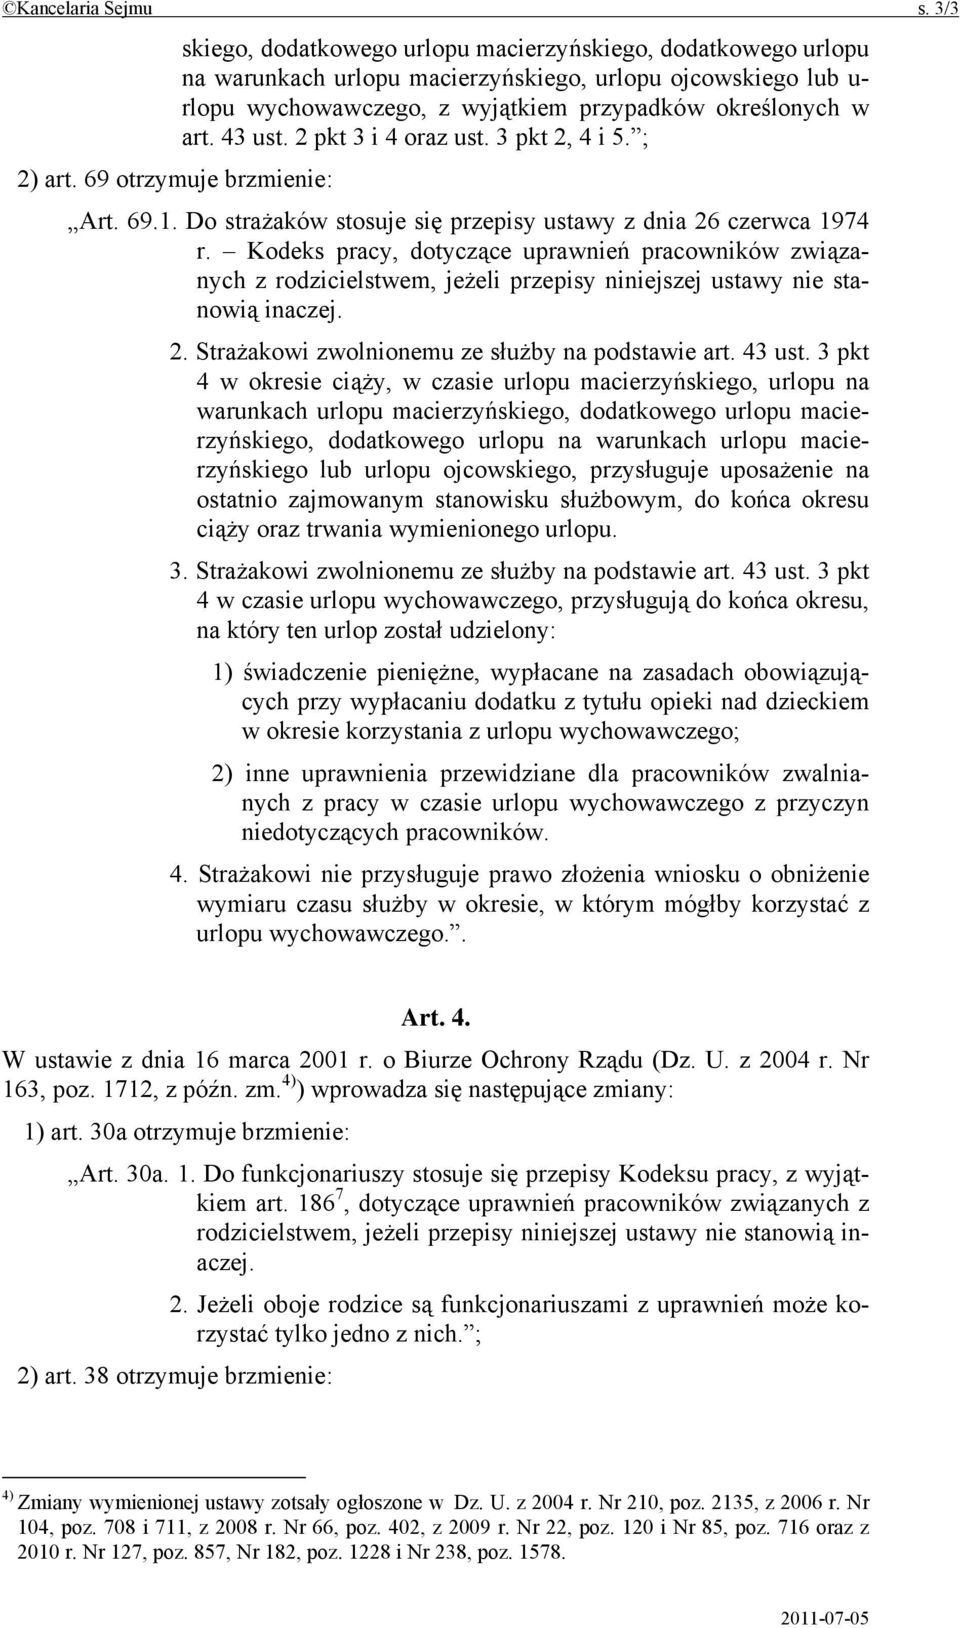 Kodeks pracy, dotyczące uprawnień pracowników związanych z rodzicielstwem, jeżeli przepisy niniejszej ustawy nie stanowią inaczej. 2. Strażakowi zwolnionemu ze służby na podstawie art. 43 ust.